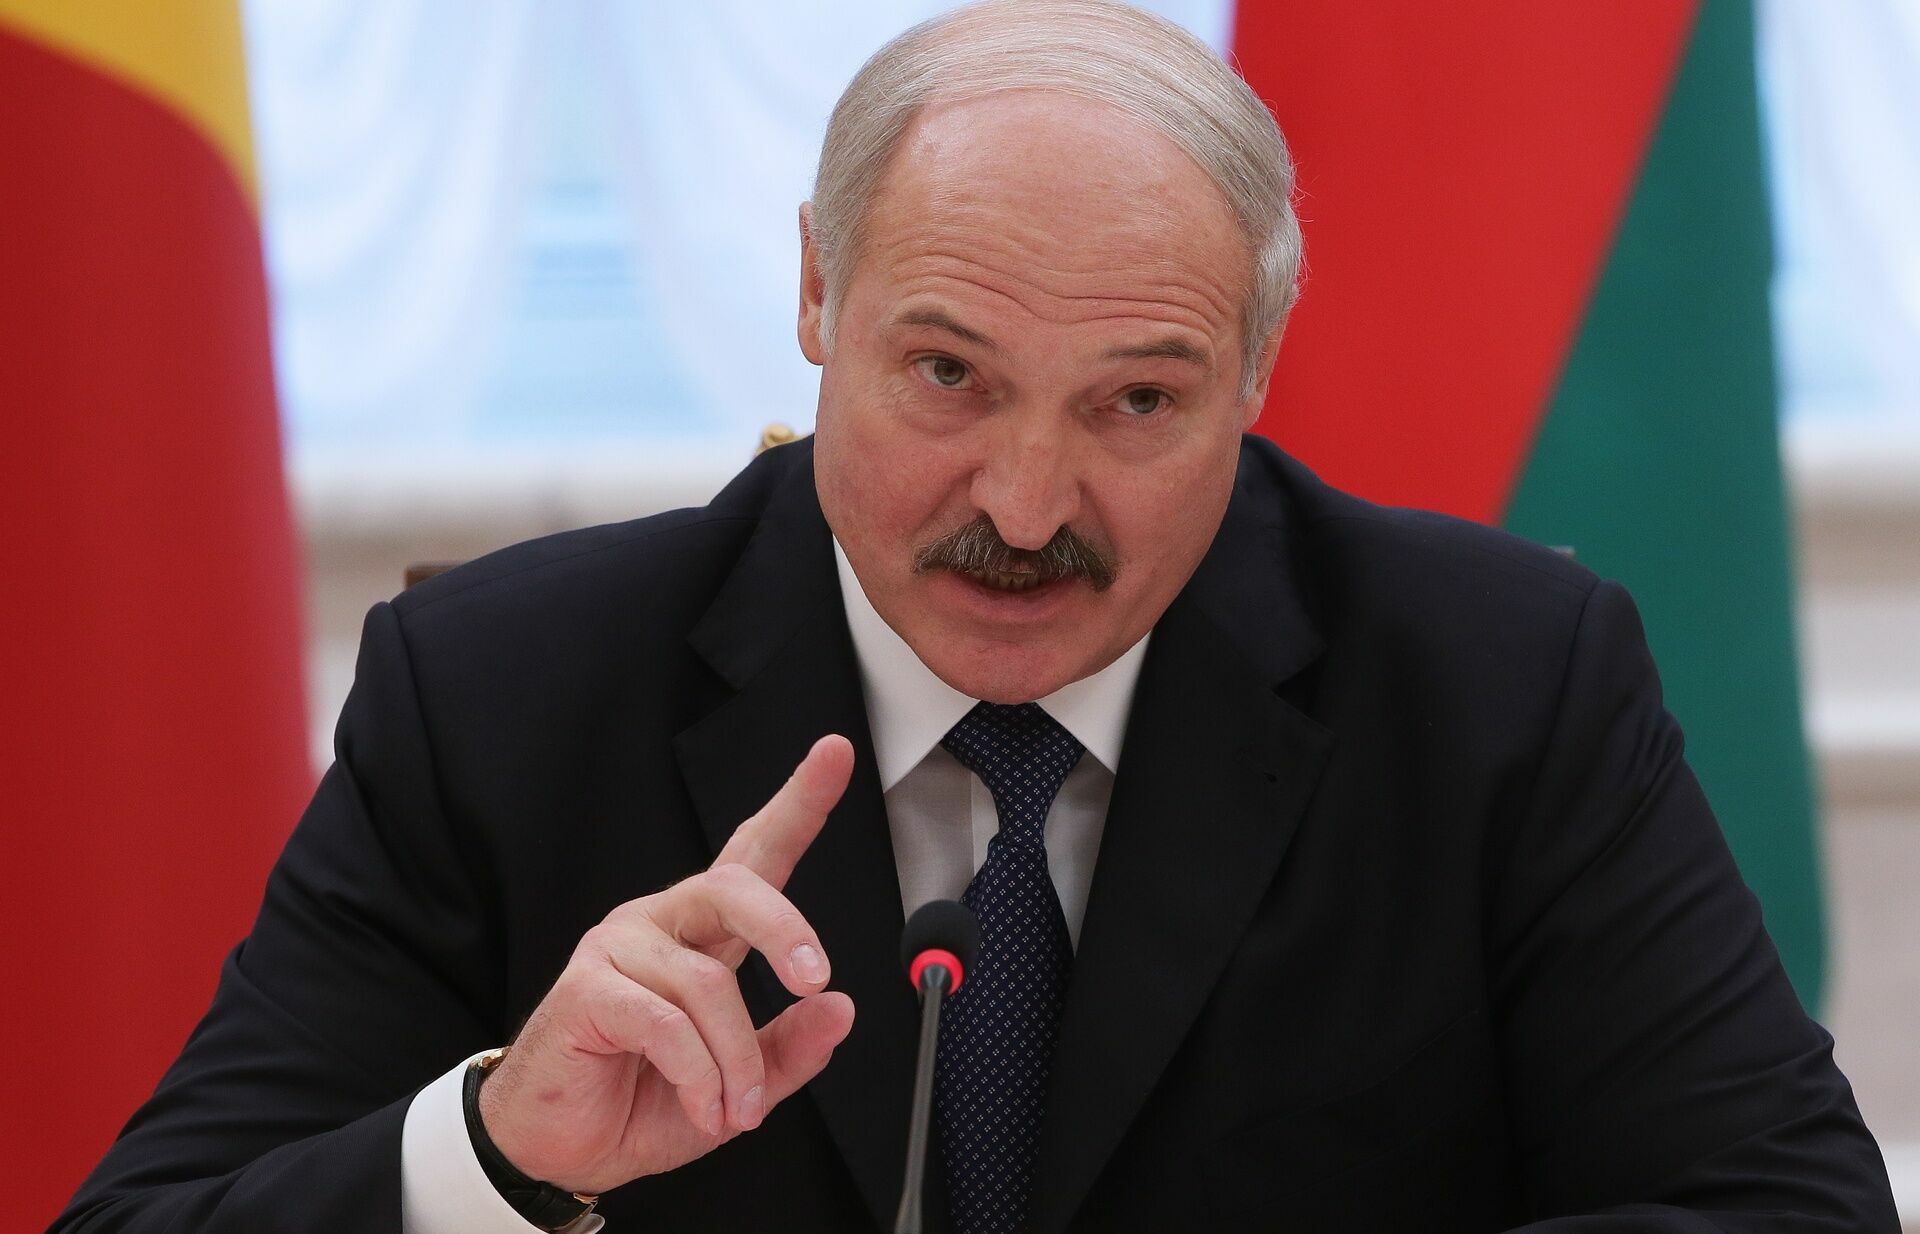 Лукашенко обвинил НАТО и Польшу в заговоре с целью раздела Украины